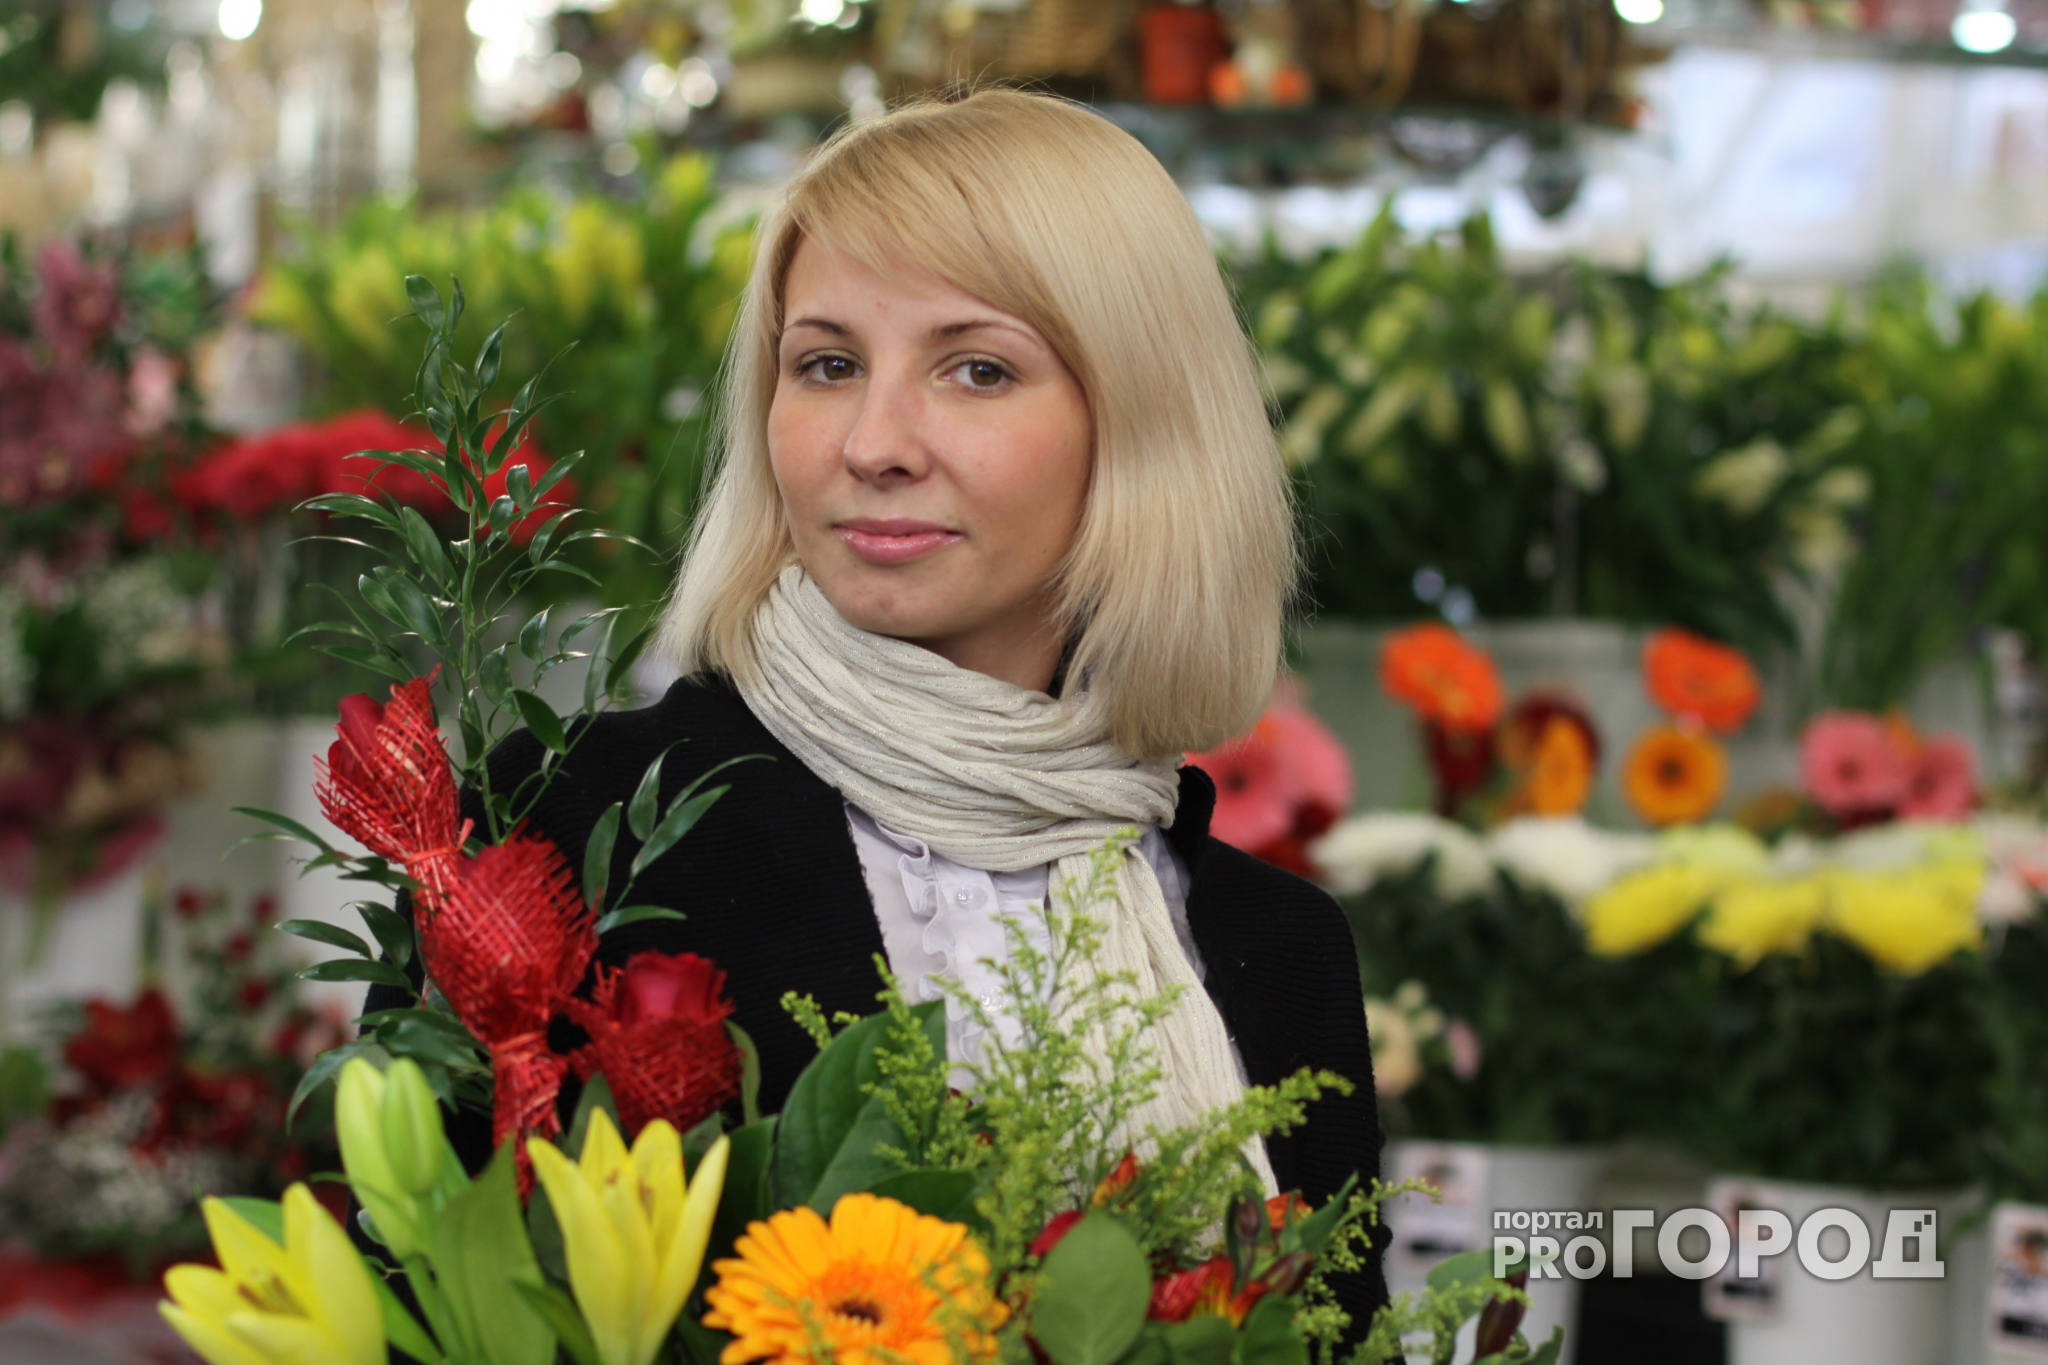 Во Владимире начинают массово скупать оптовые партии цветов к 8 марта